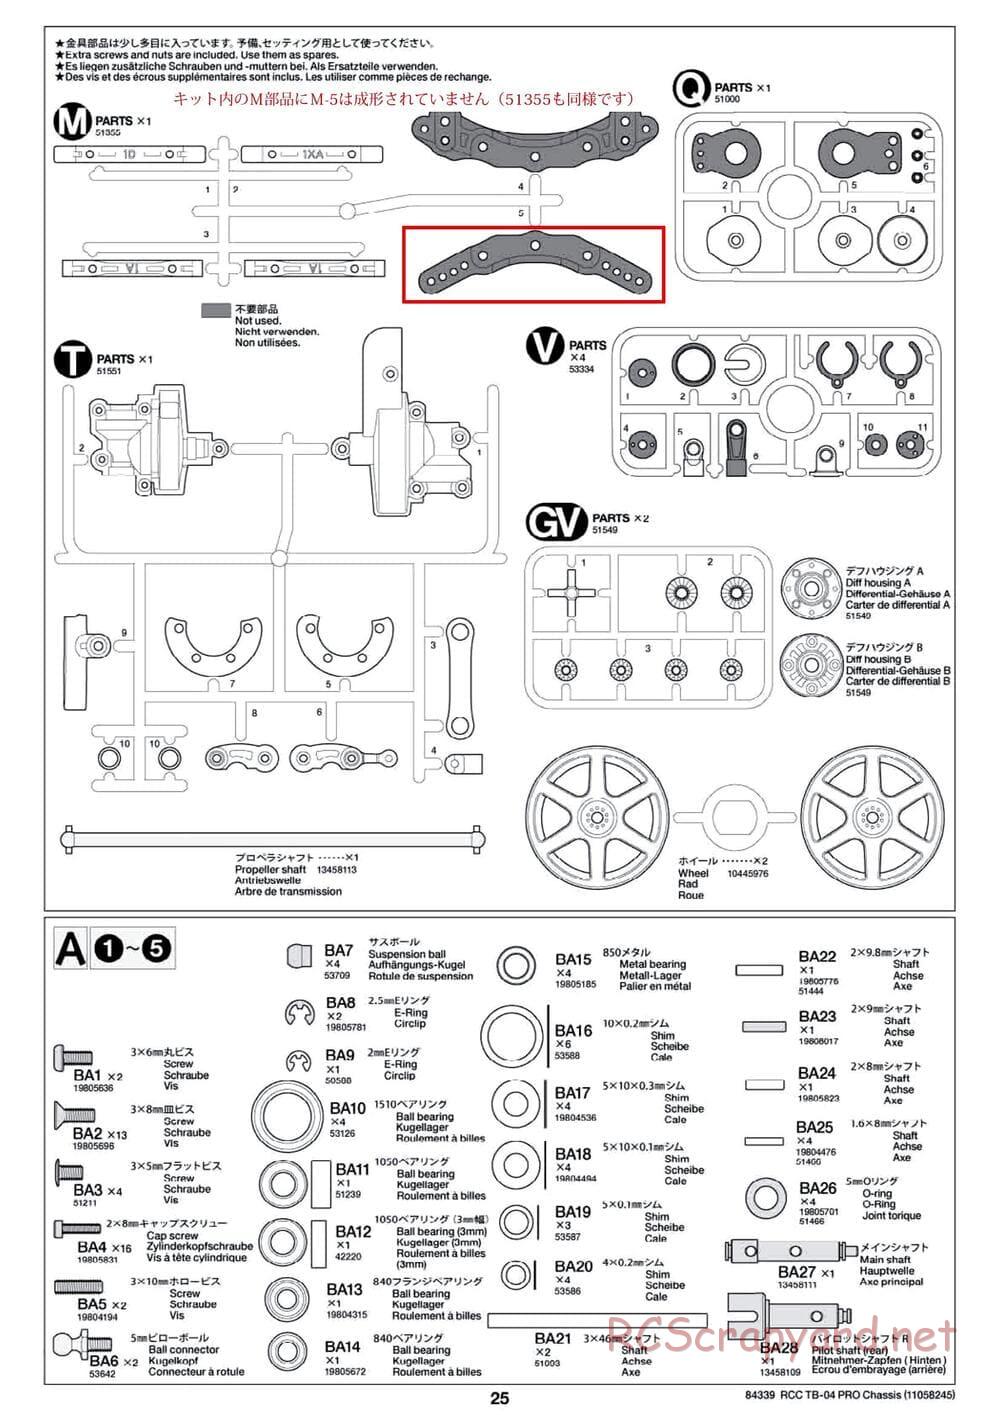 Tamiya - TB-04 Pro Chassis - Manual - Page 25